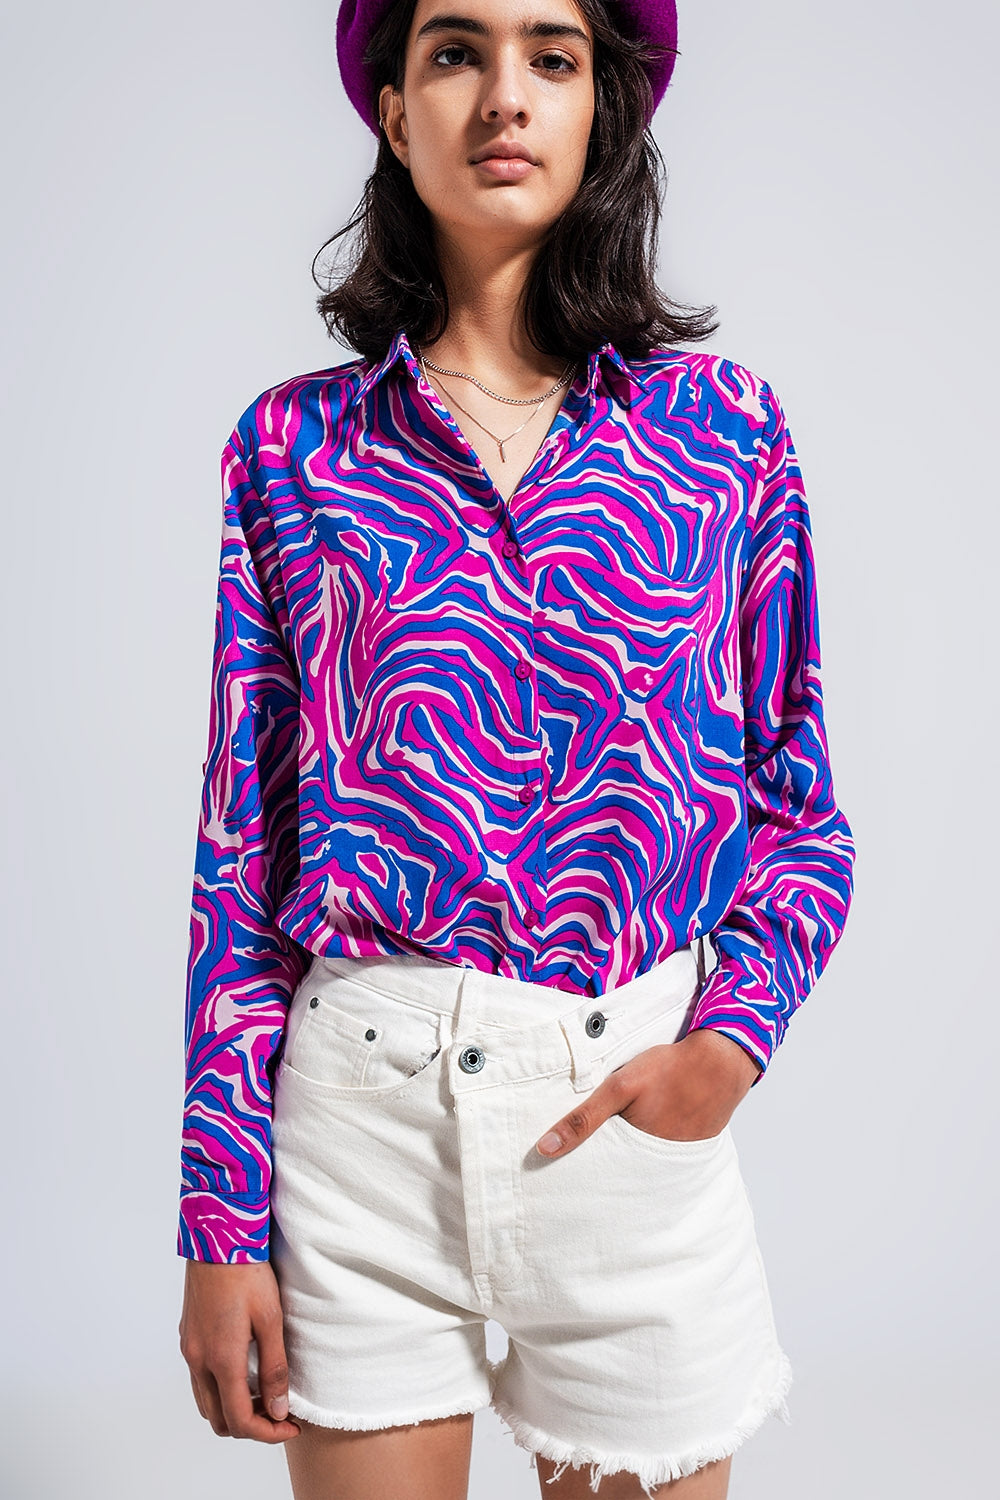 Camicia fluida con stampa in colori accesi in viola